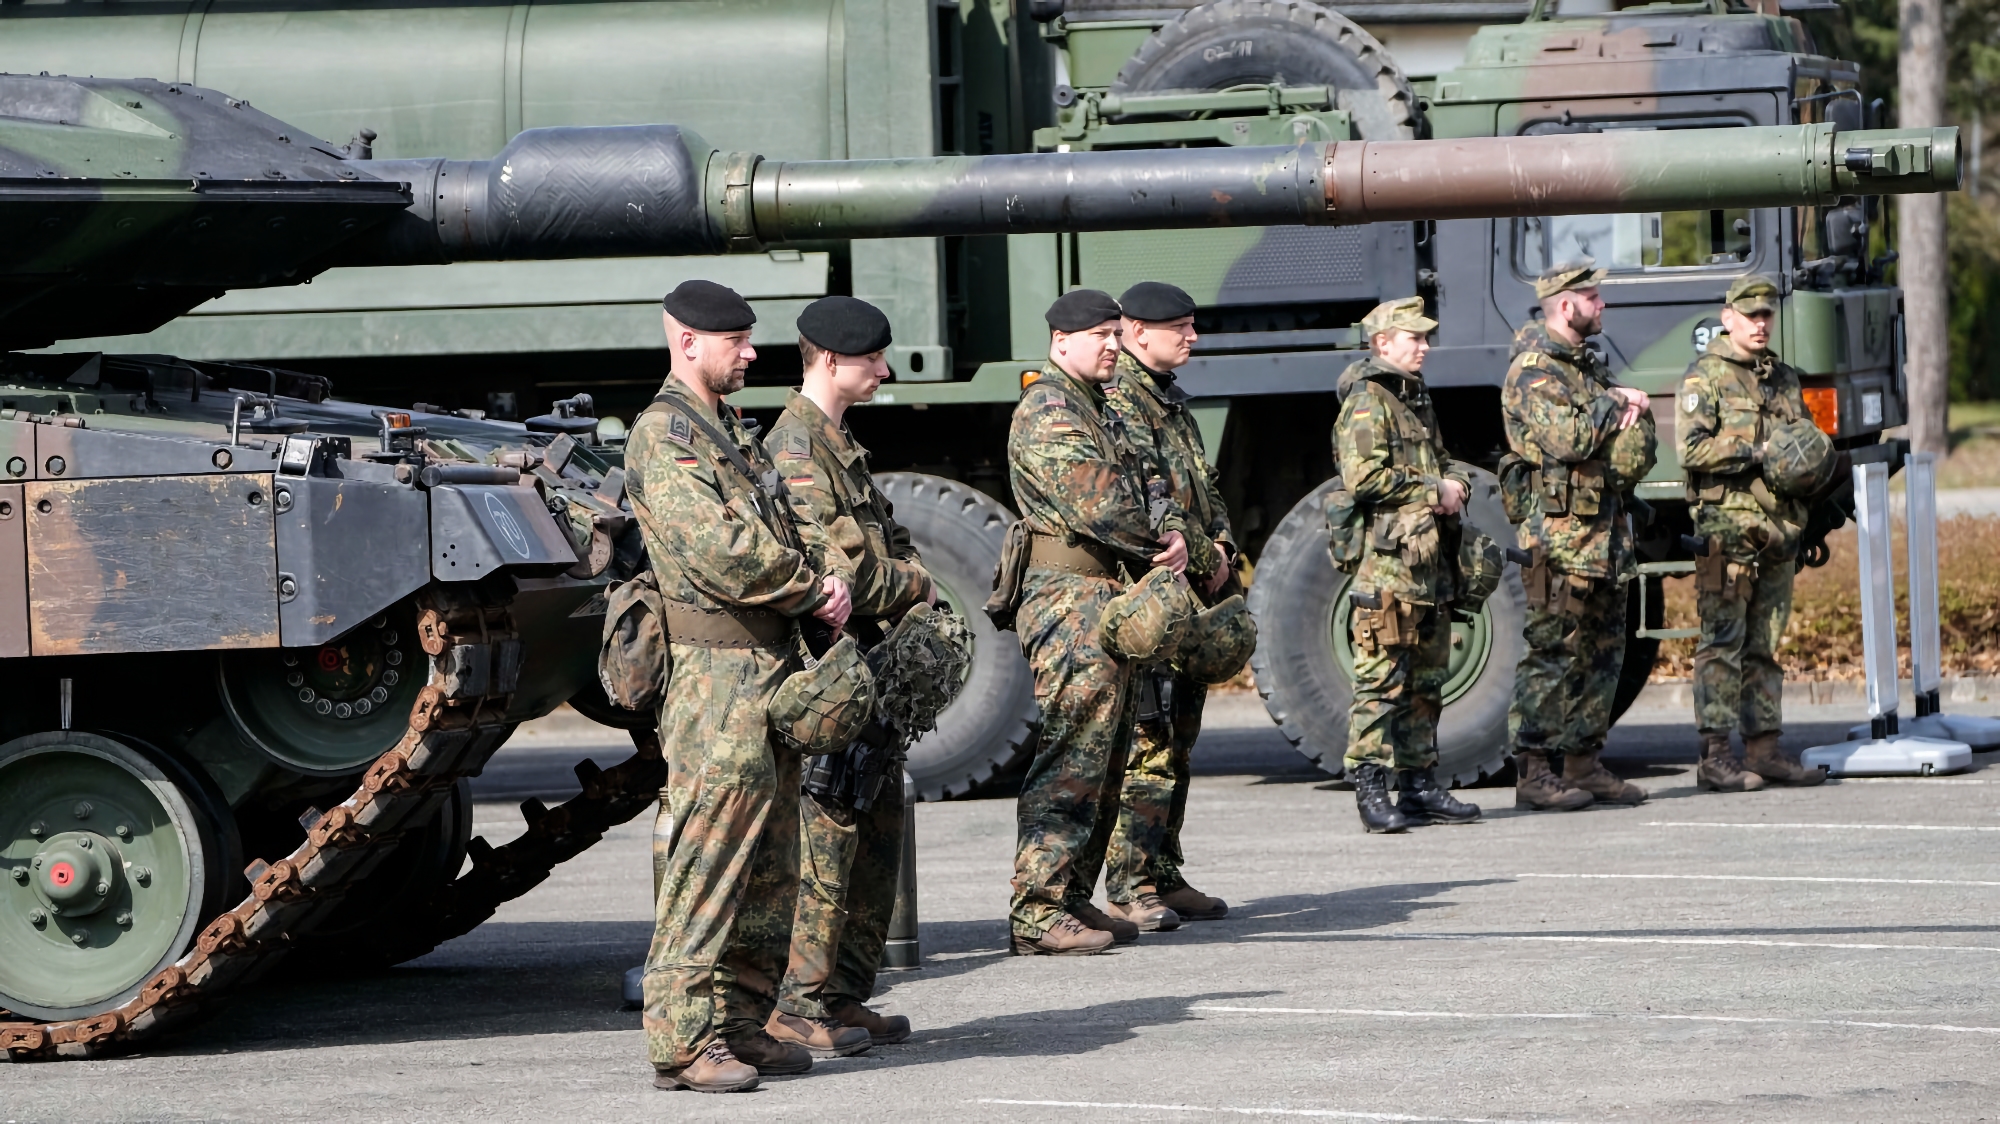 APWKS-Raketenwerfer, Oshkosh M1070-Panzerzugmaschine, Pickup-Trucks, Aufklärungsdrohnen und ferngesteuerte Raupenfahrzeuge: Deutschland gibt der Ukraine ein neues Militärhilfepaket